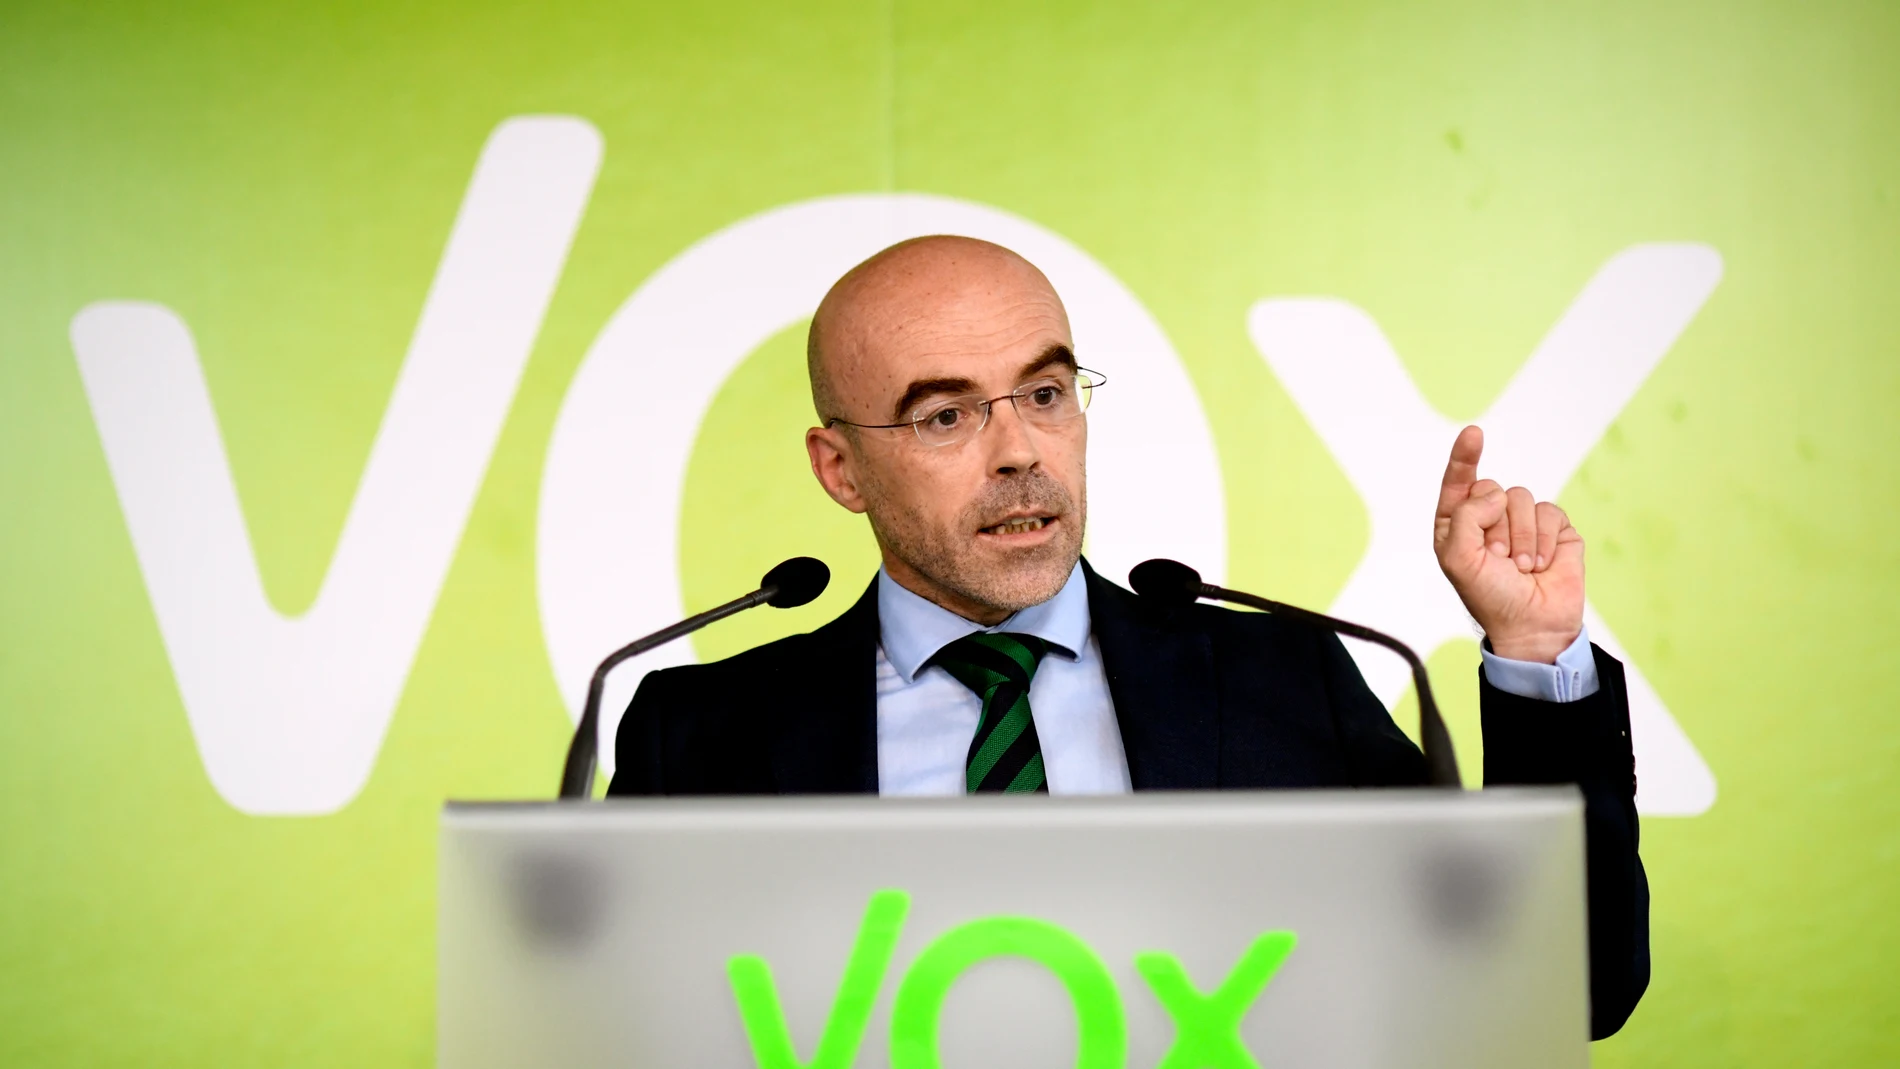 El eurodiputado de Vox y vicepresienta del comité de acción política del partido, Jorge Buxadé